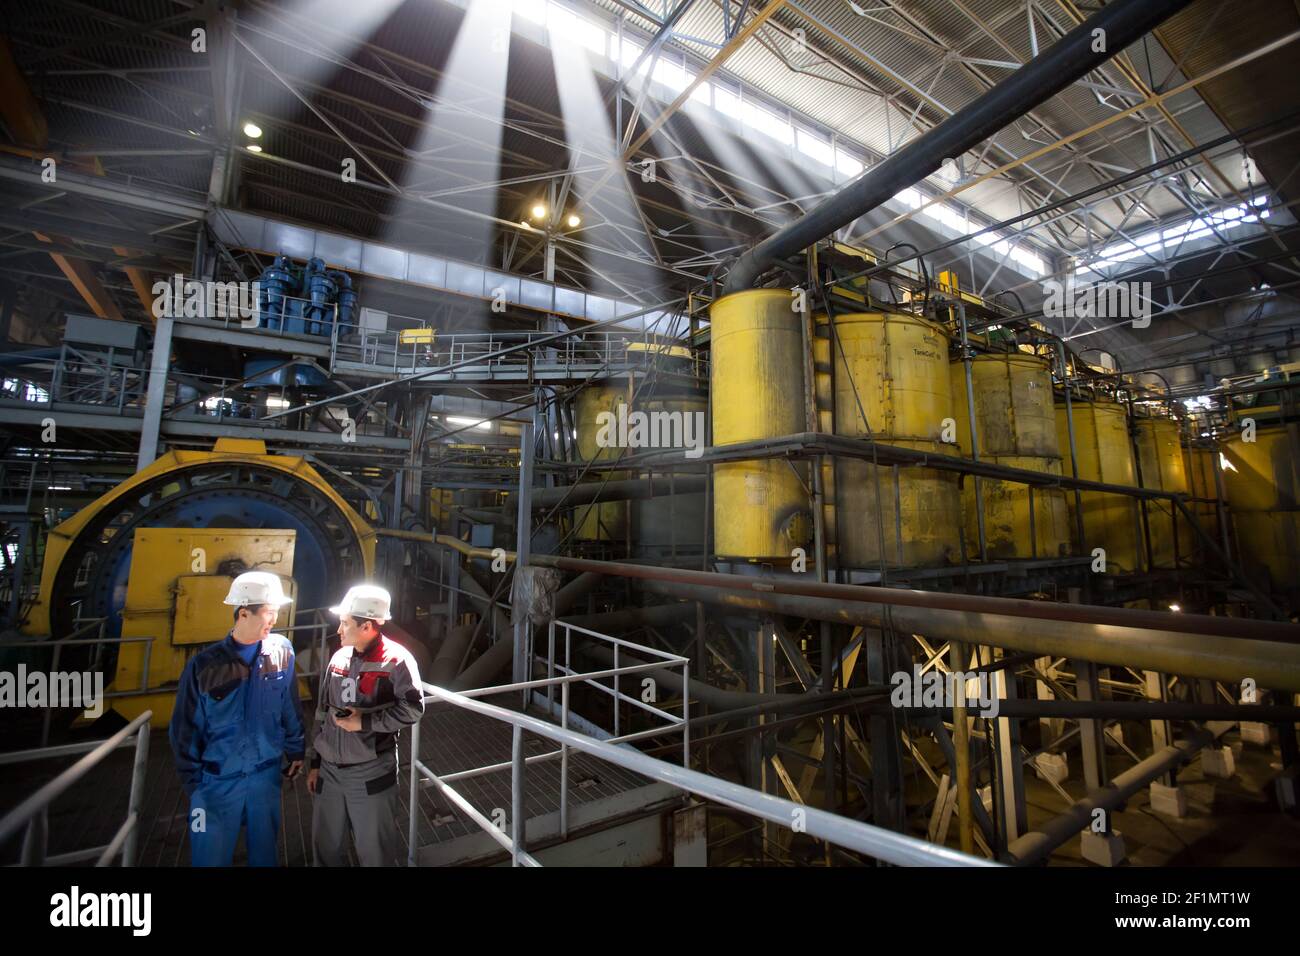 Khromtau/Kasachstan - Mai 06 2012: Werkstatt für Kupfererz-Konzentrationsanlagen. Ausstattung von Outokumpu Technology. Zwei asiatische Ingenieure diskutieren über Industrie Stockfoto